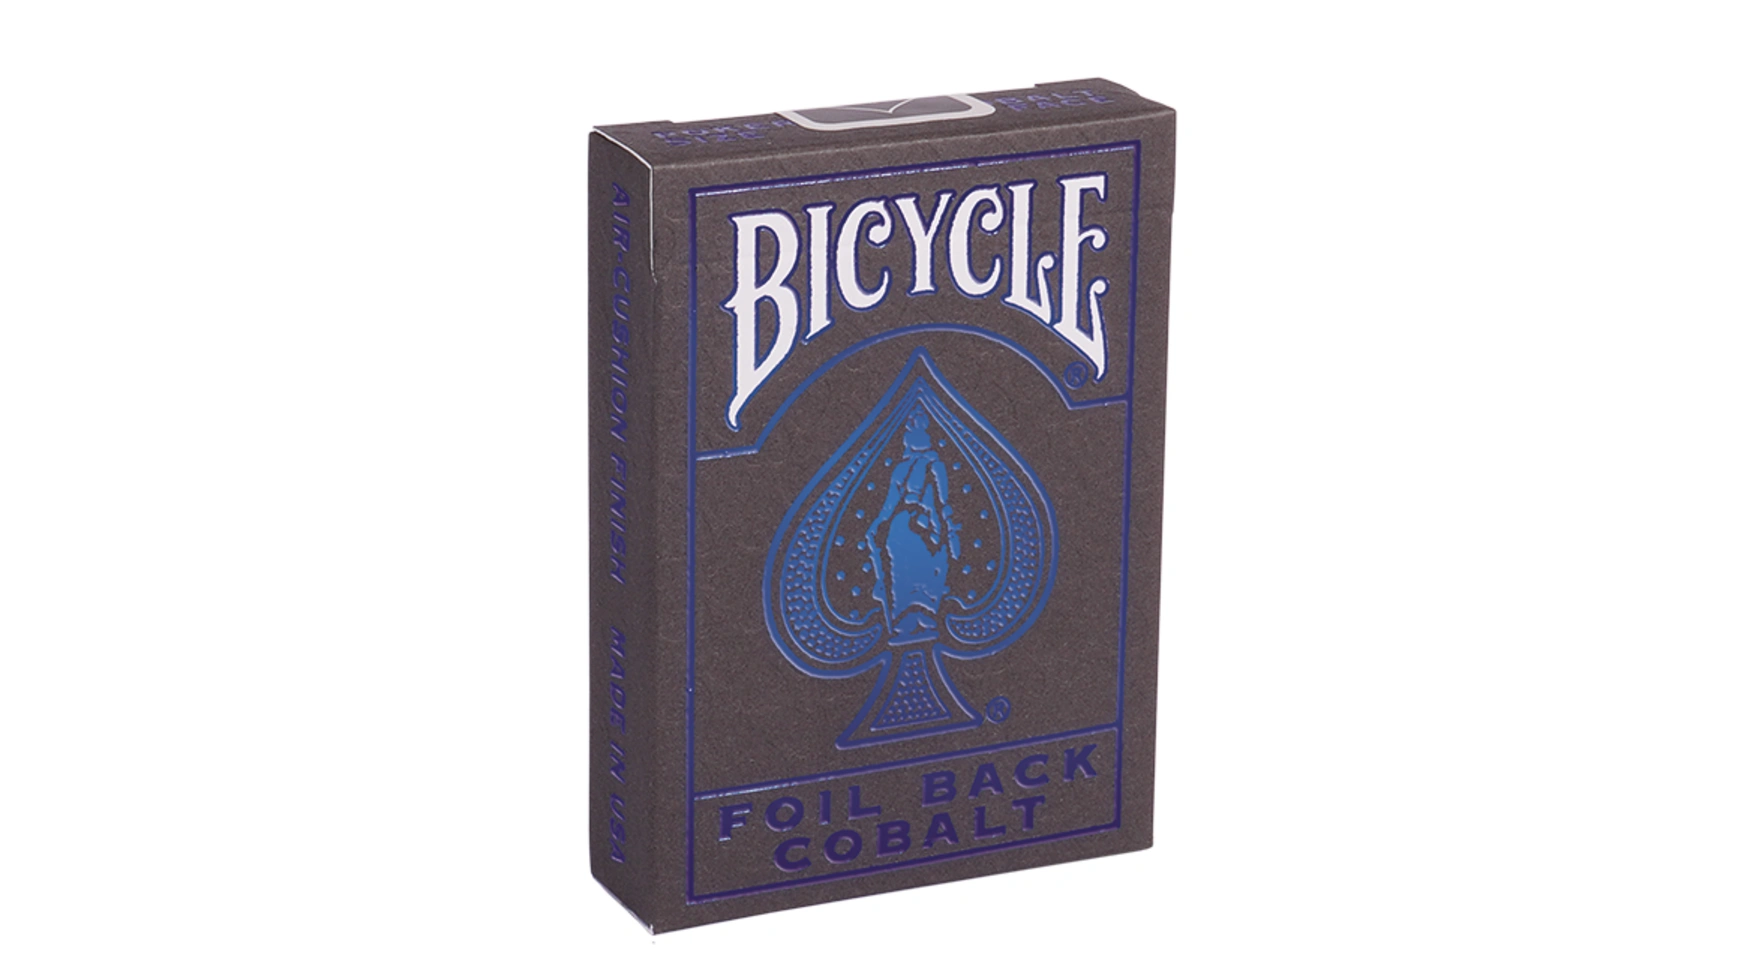 Bicycle игральные карты Metalluxe Blue игральные карты bicycle dark mode темный режим